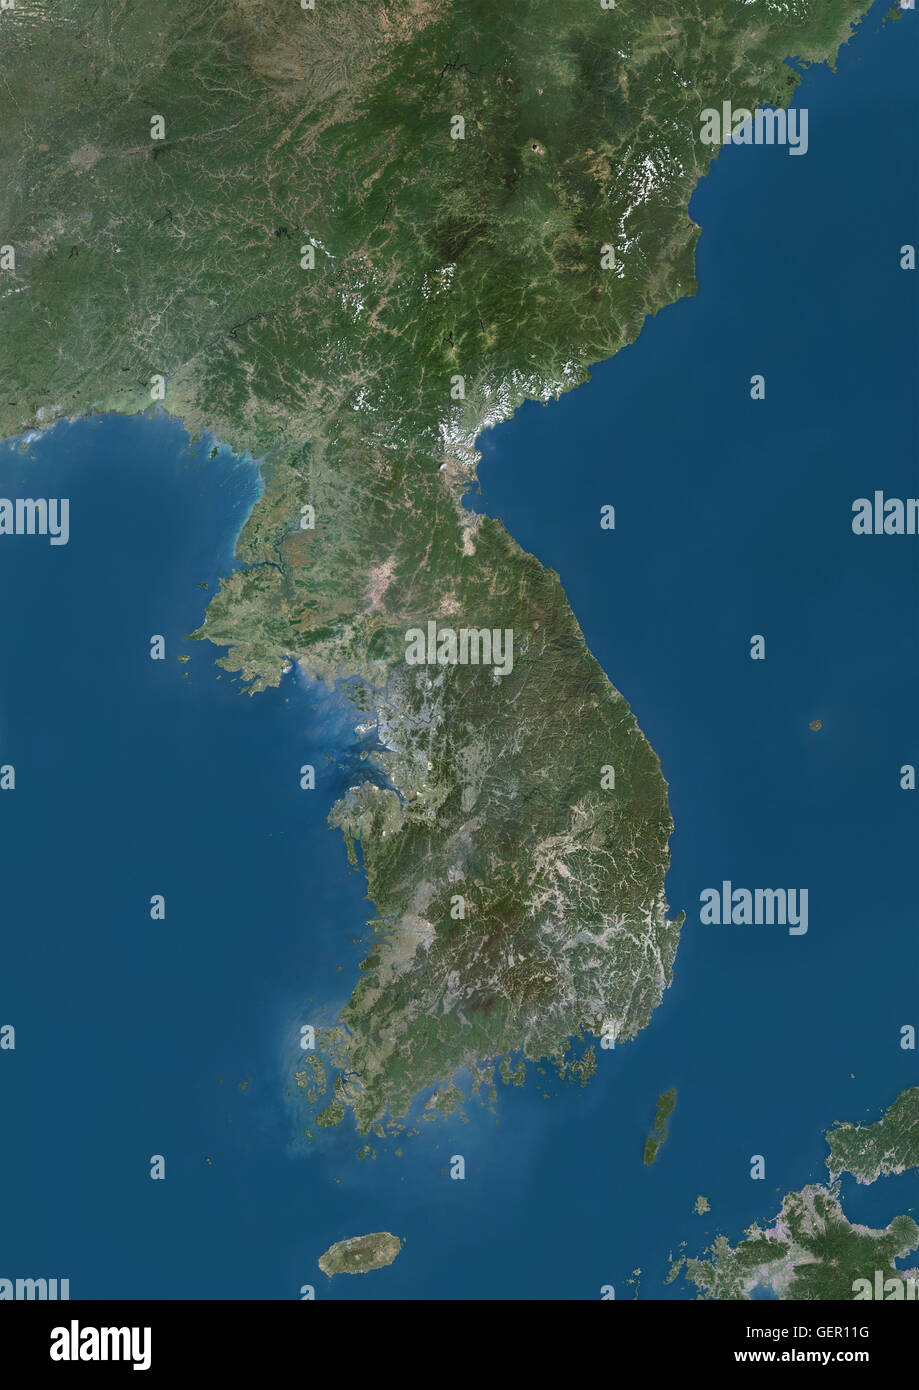 Satellitenansicht der koreanischen Halbinsel. Dieses Bild wurde aus Daten von Landsat-Satelliten erworben erstellt. Stockfoto